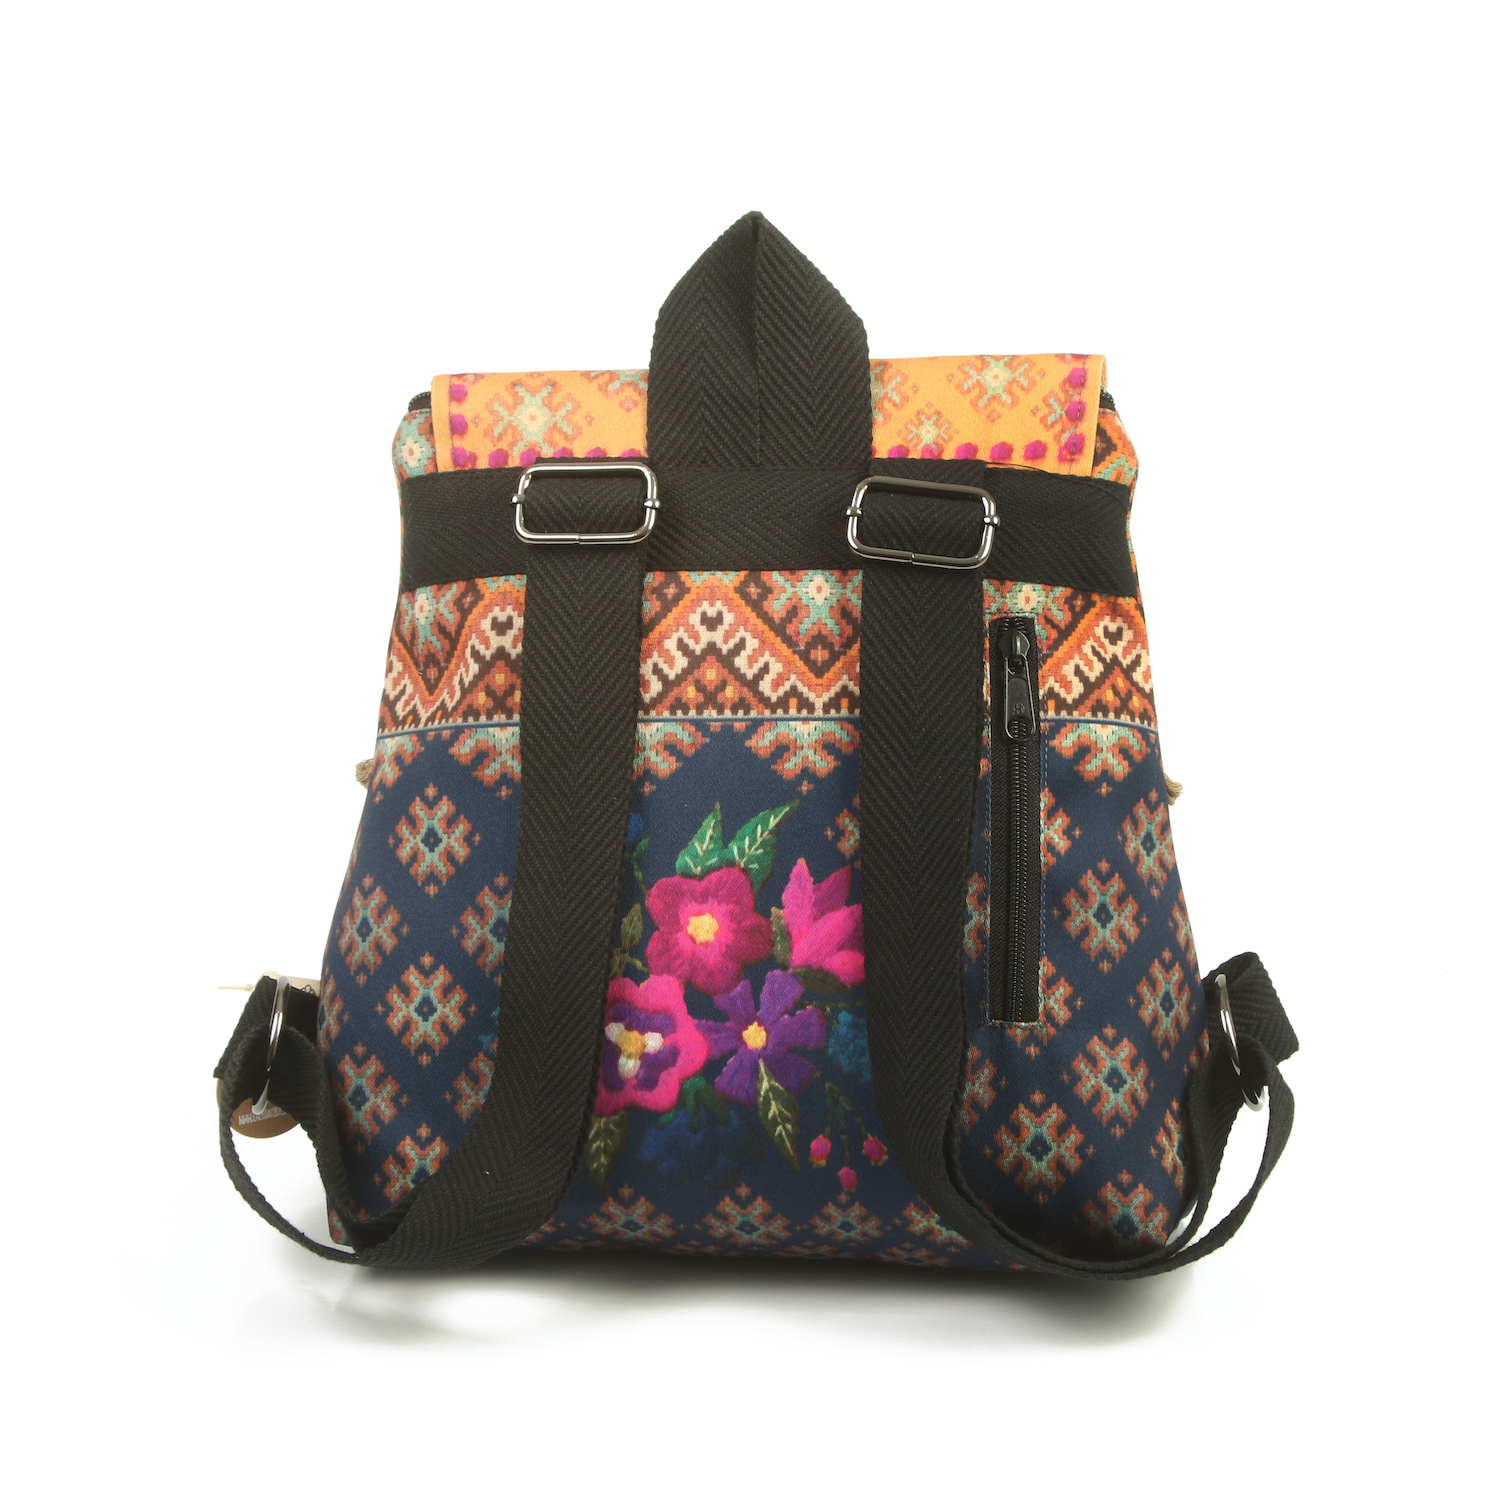 LazyDayz Designs Backpack γυναικείος σάκος πλάτης χειροποίητος bb0306c